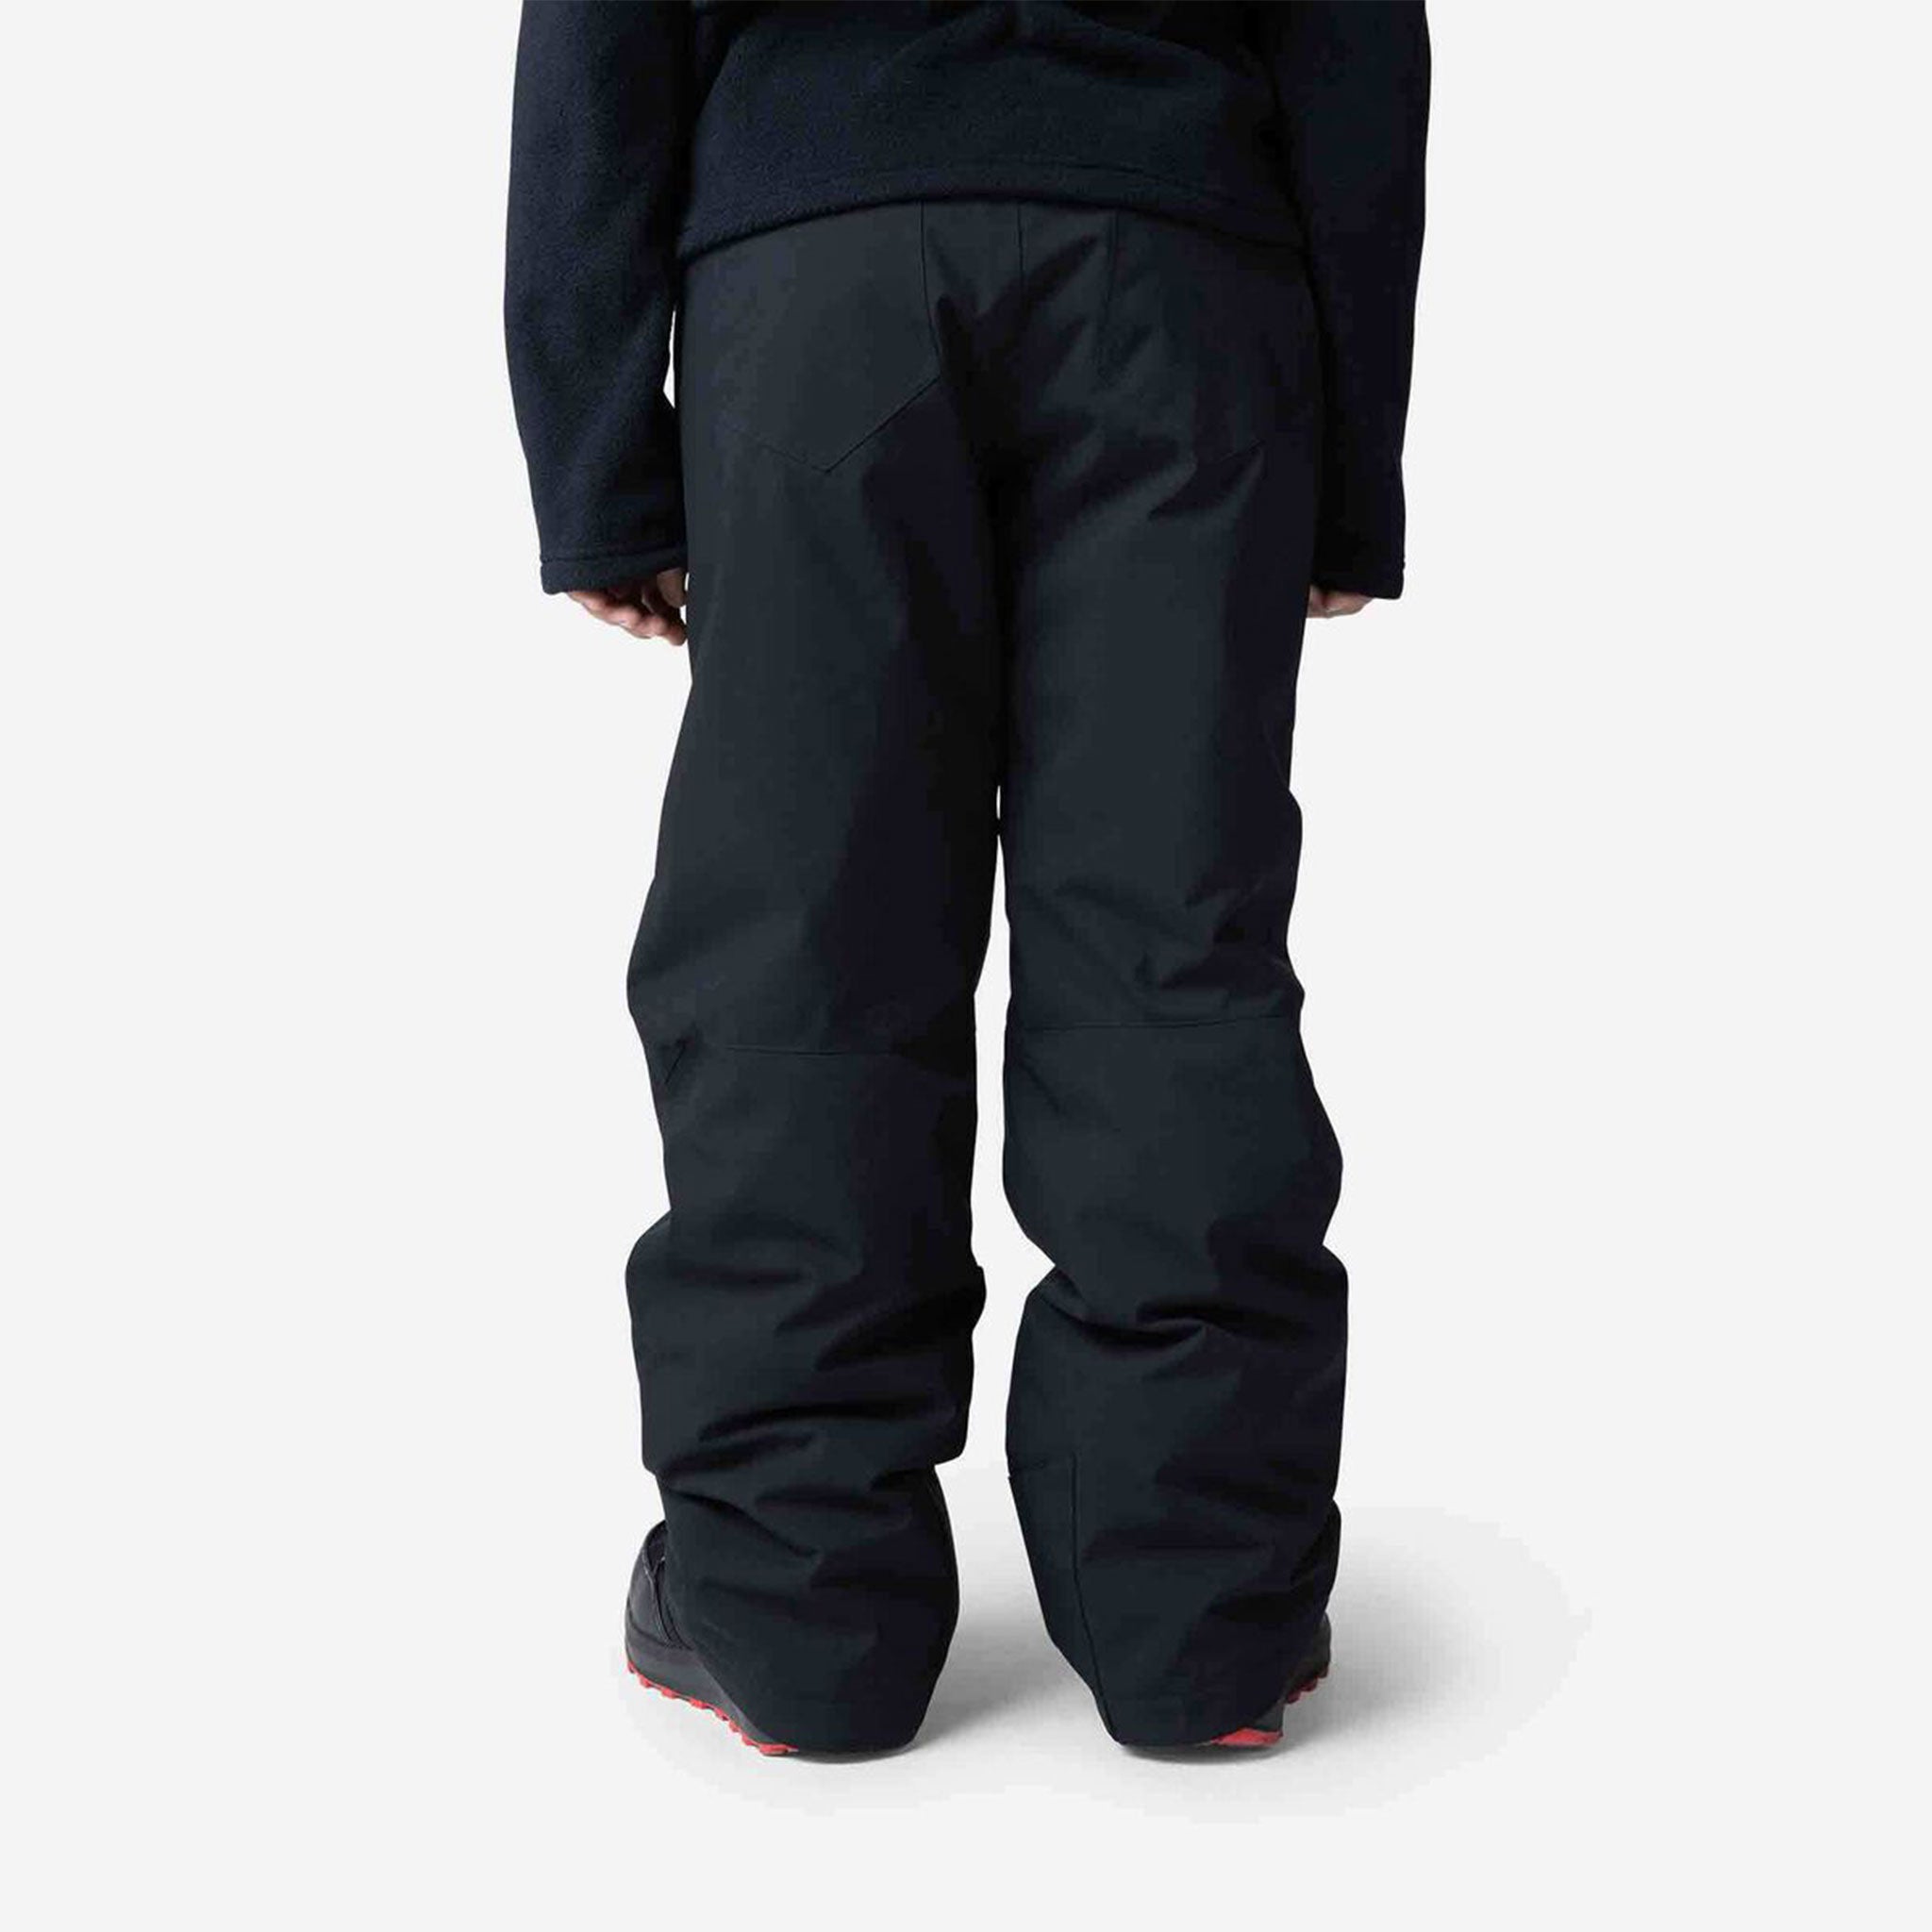 Piste Junior Ski Pants in Black